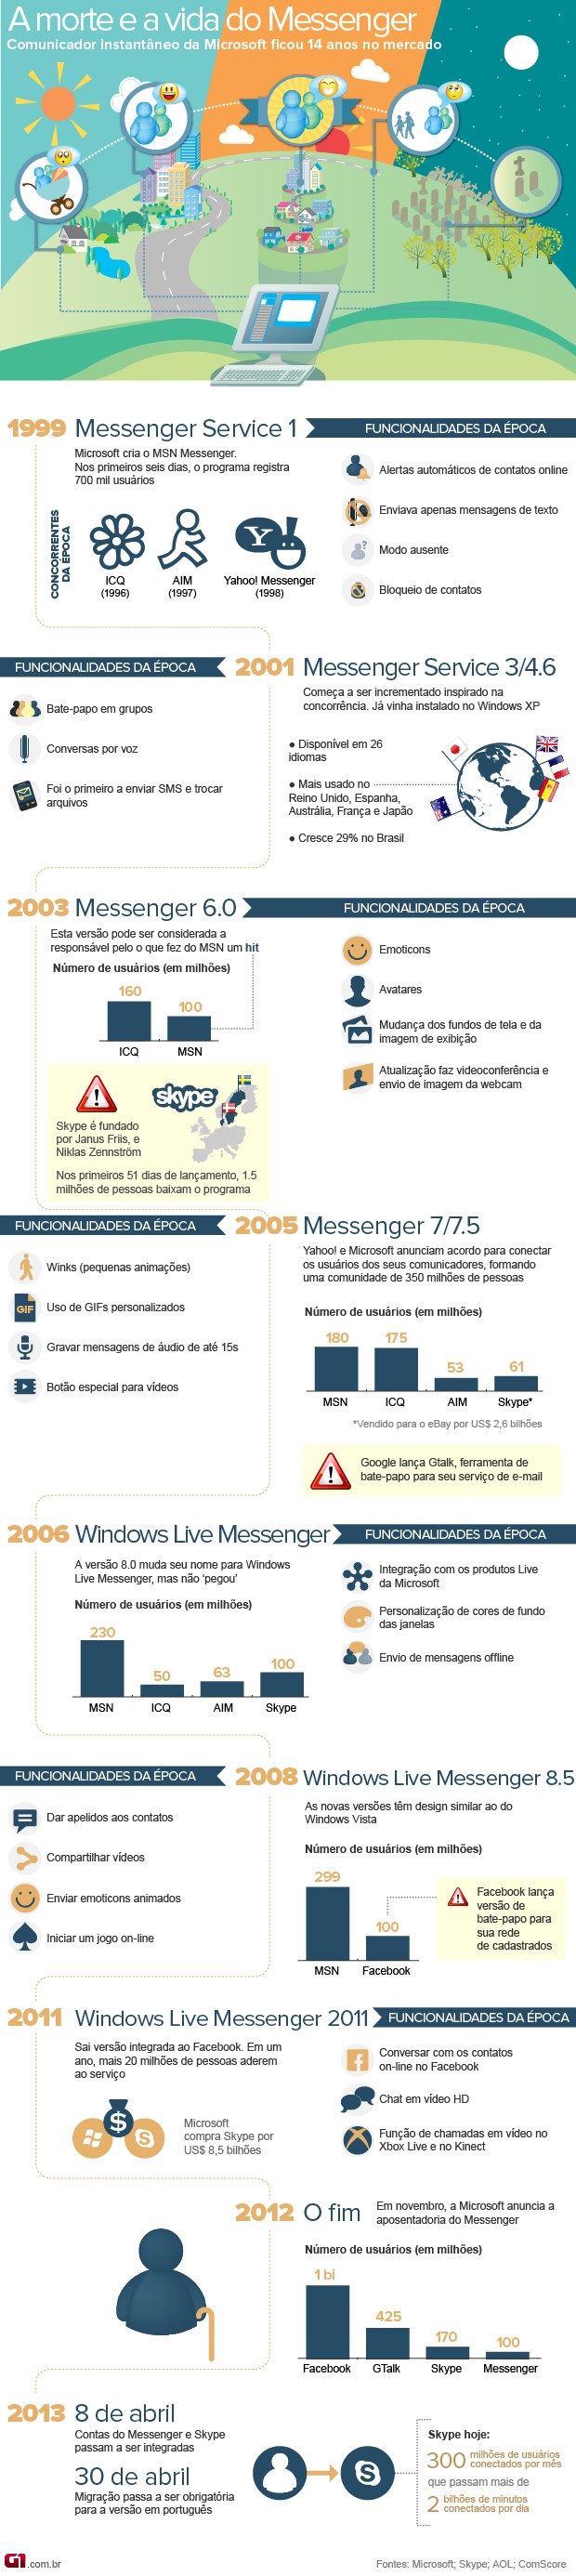 Vida e morte do MSN Messenger: veja a história do comunicador da Microsoft (Foto: Arte/G1)